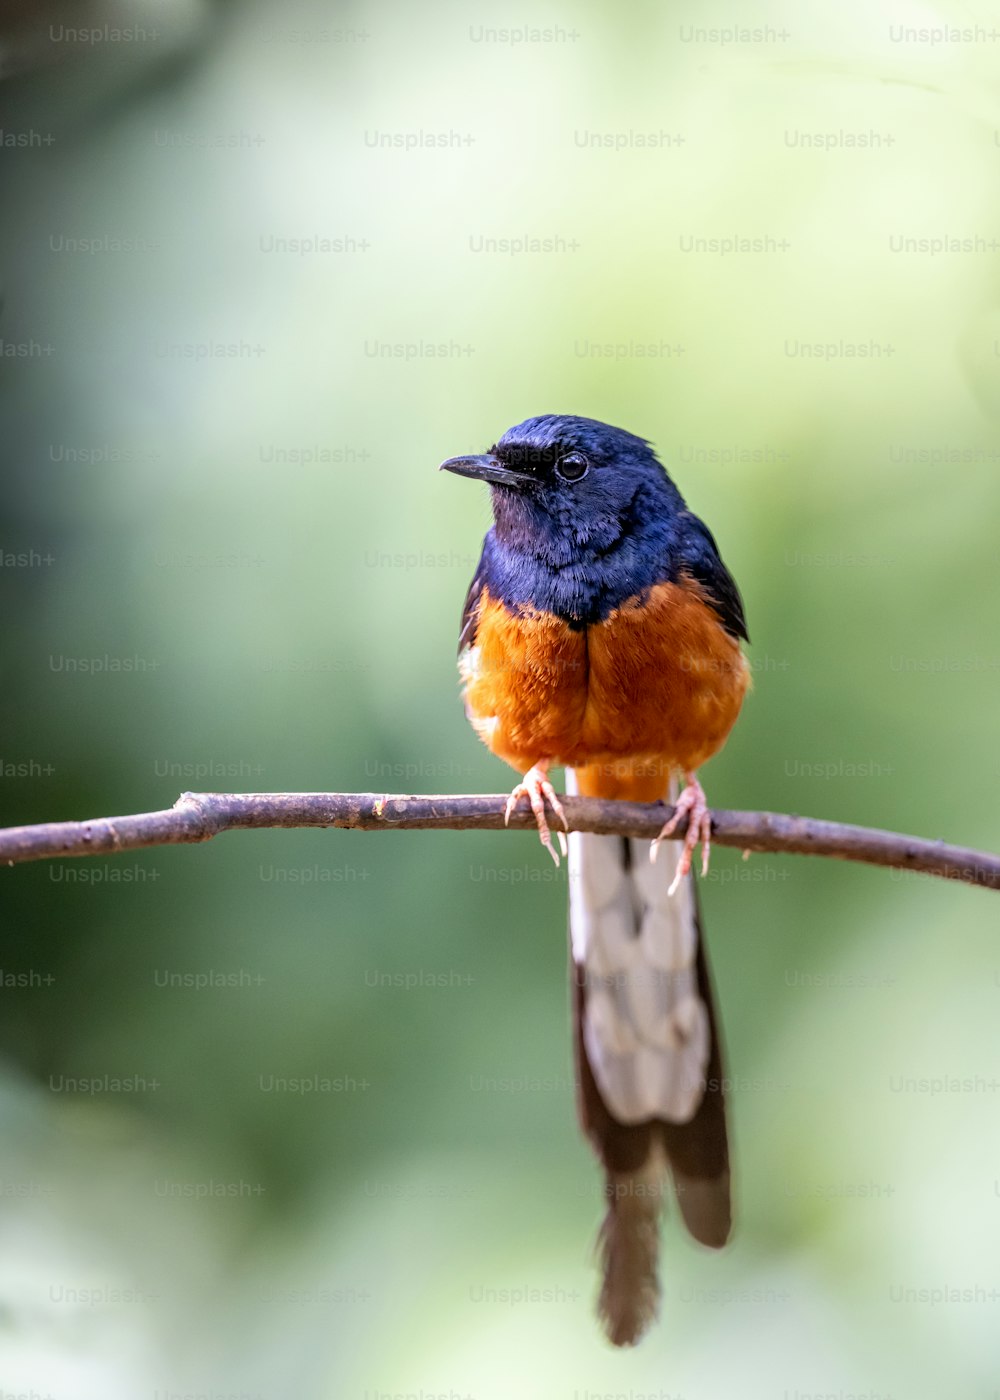 Un petit oiseau bleu et orange assis sur une branche